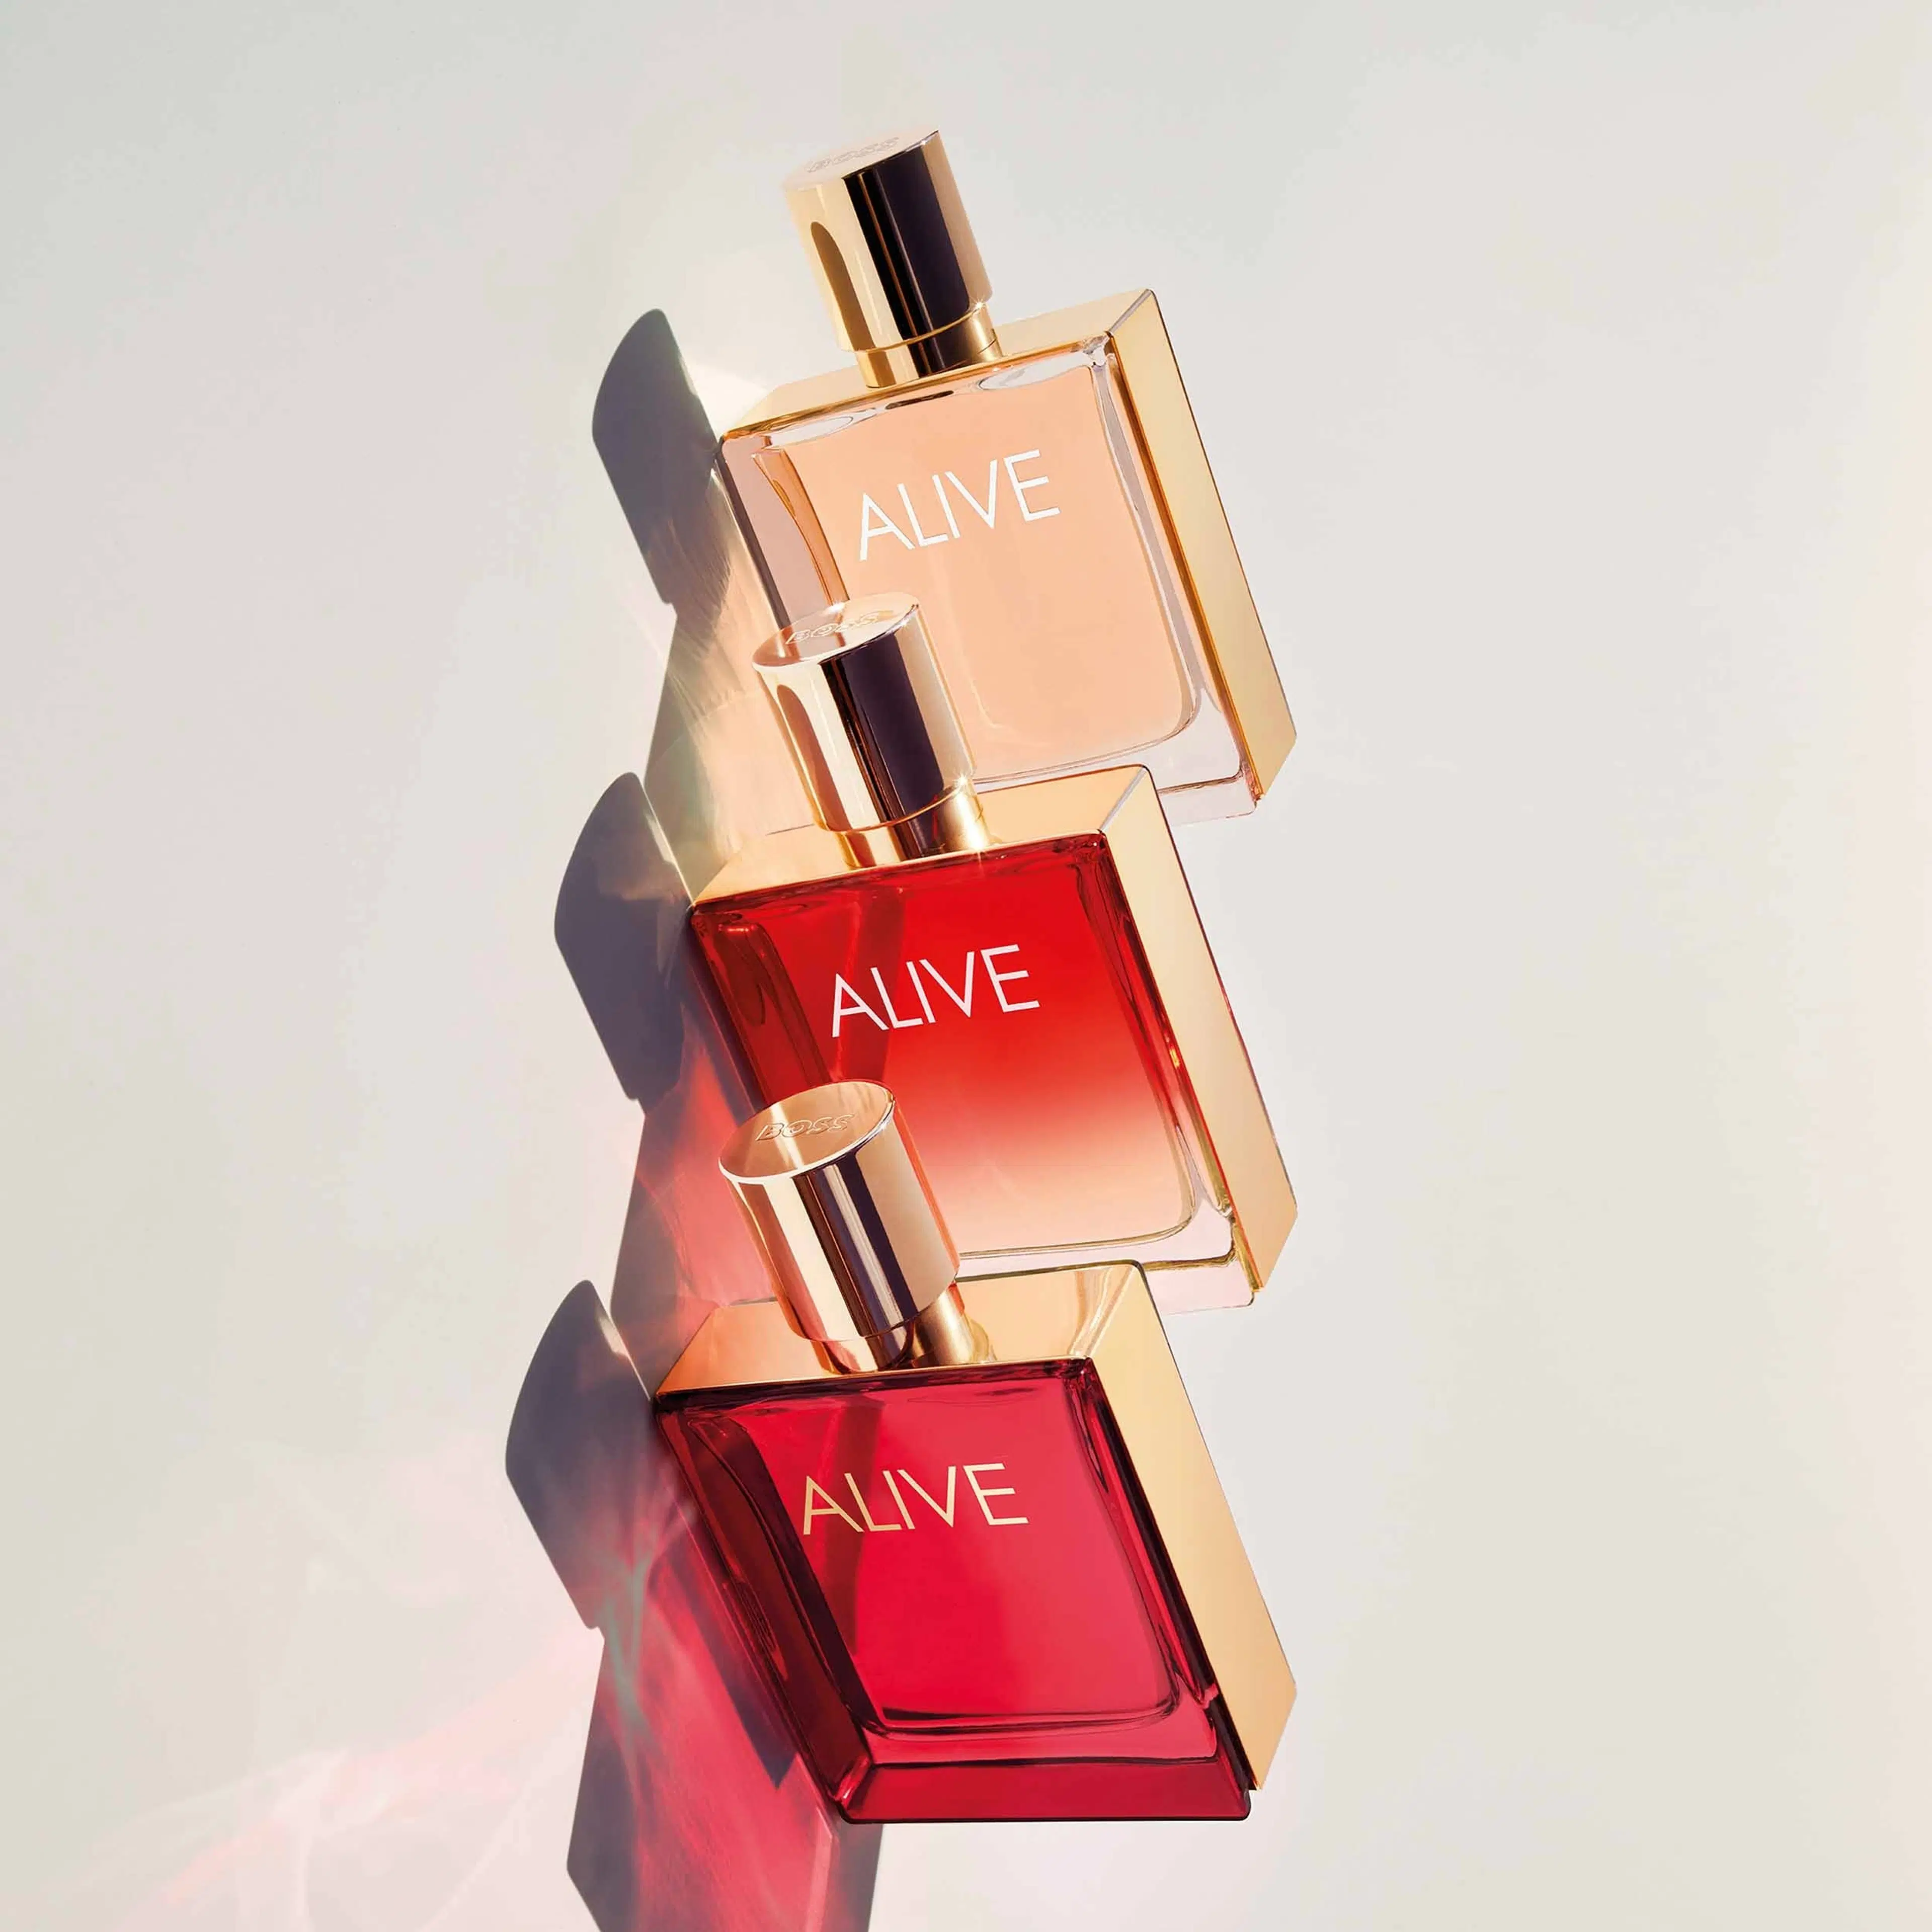 Hugo Boss Alive Parfum tuoksu 30 ml